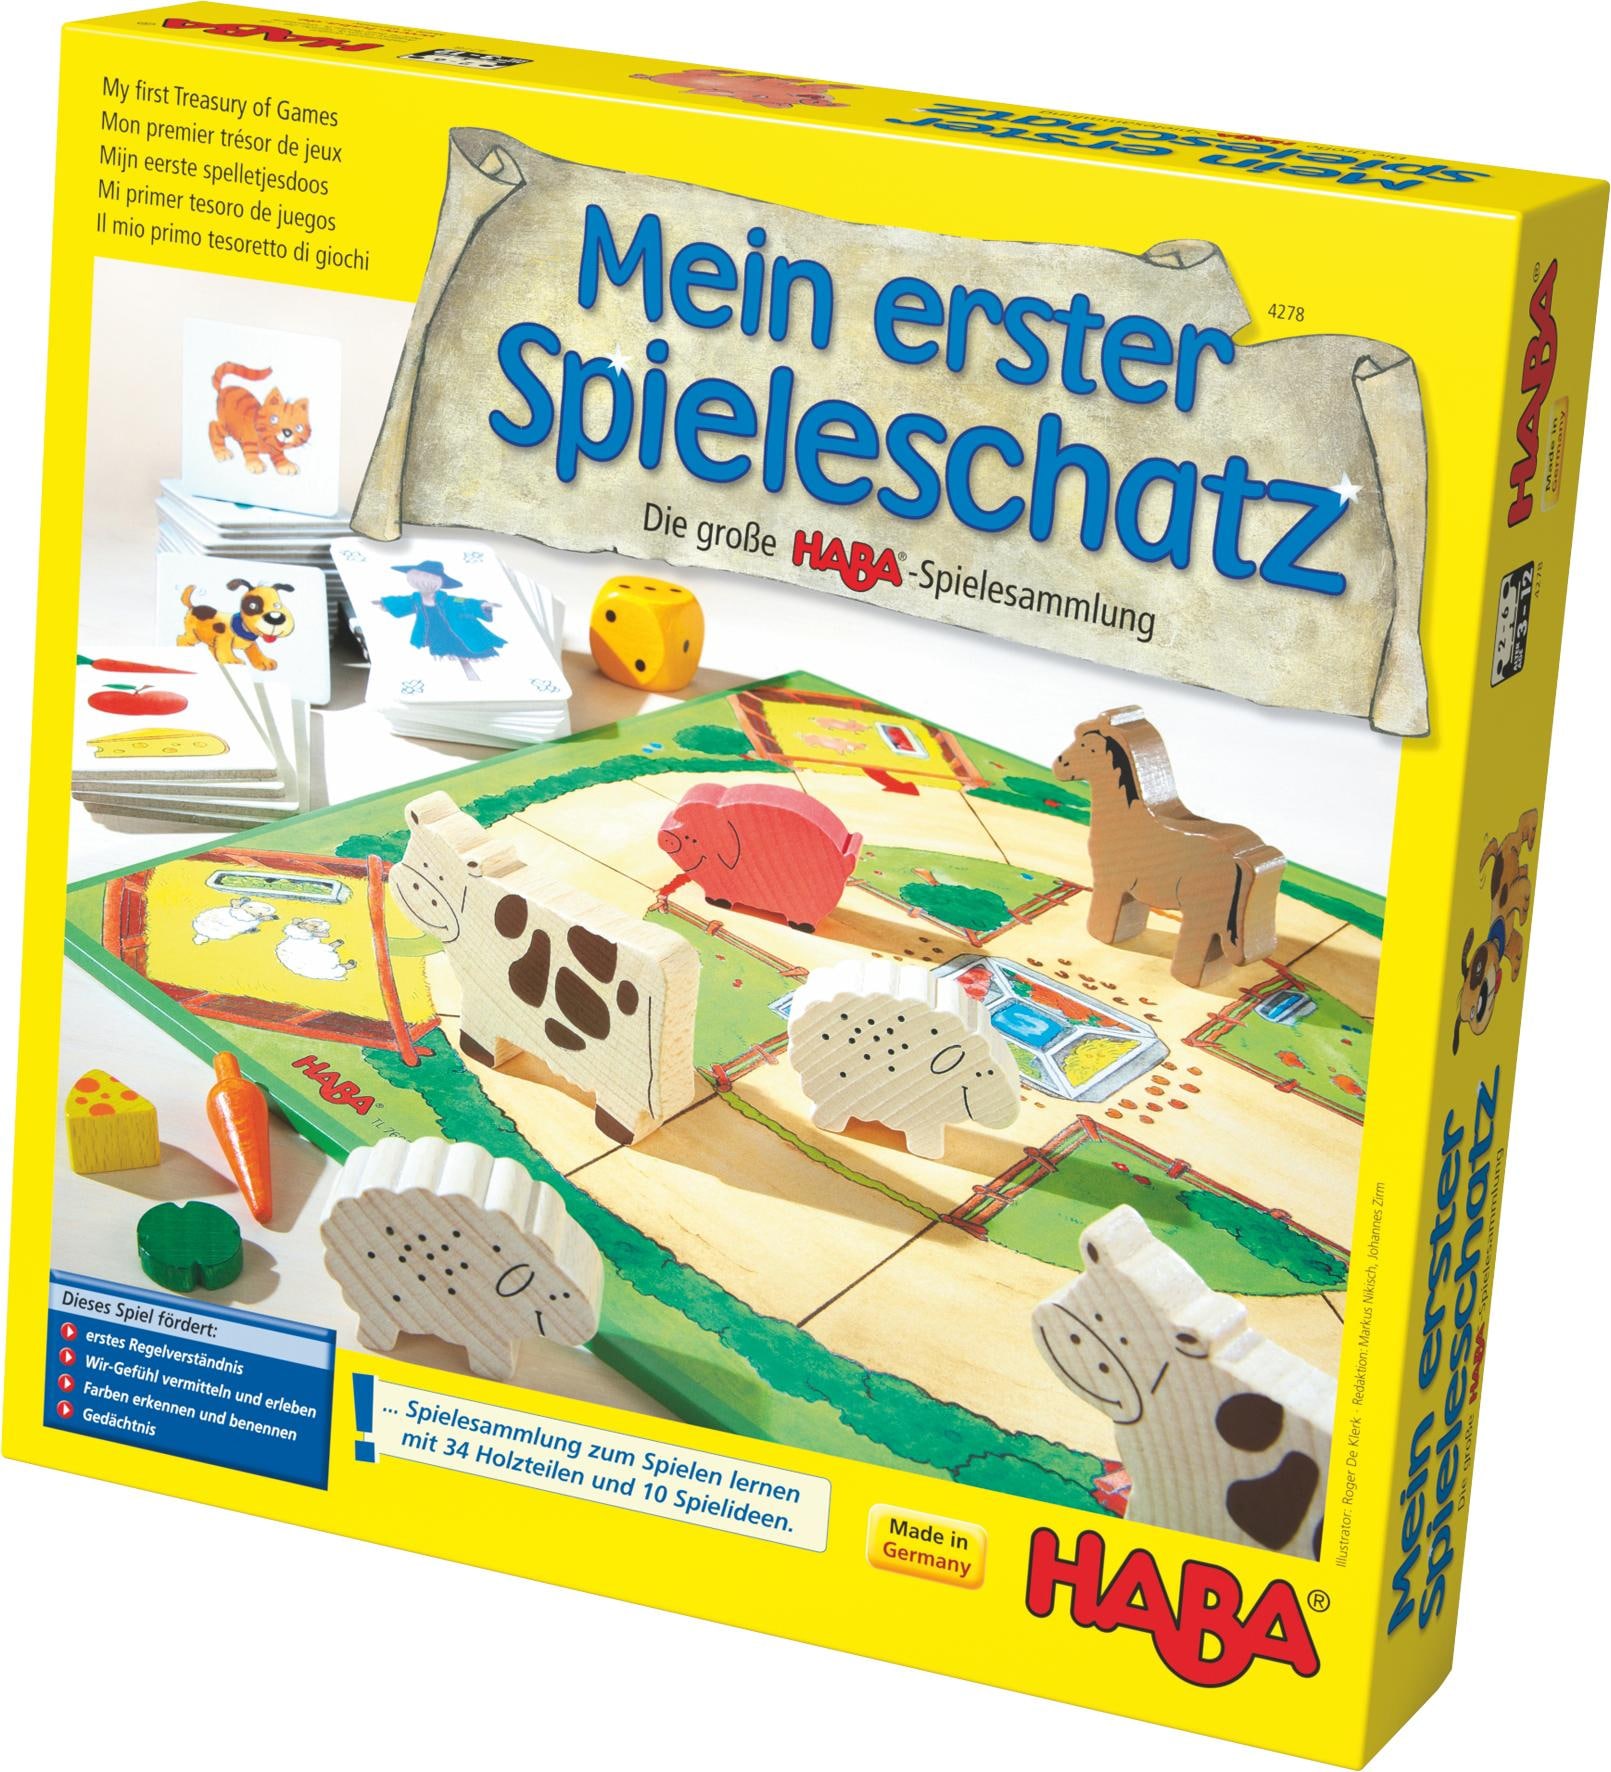 Haba Spielesammlung »Mein erster Spieleschatz«, Made in Germany